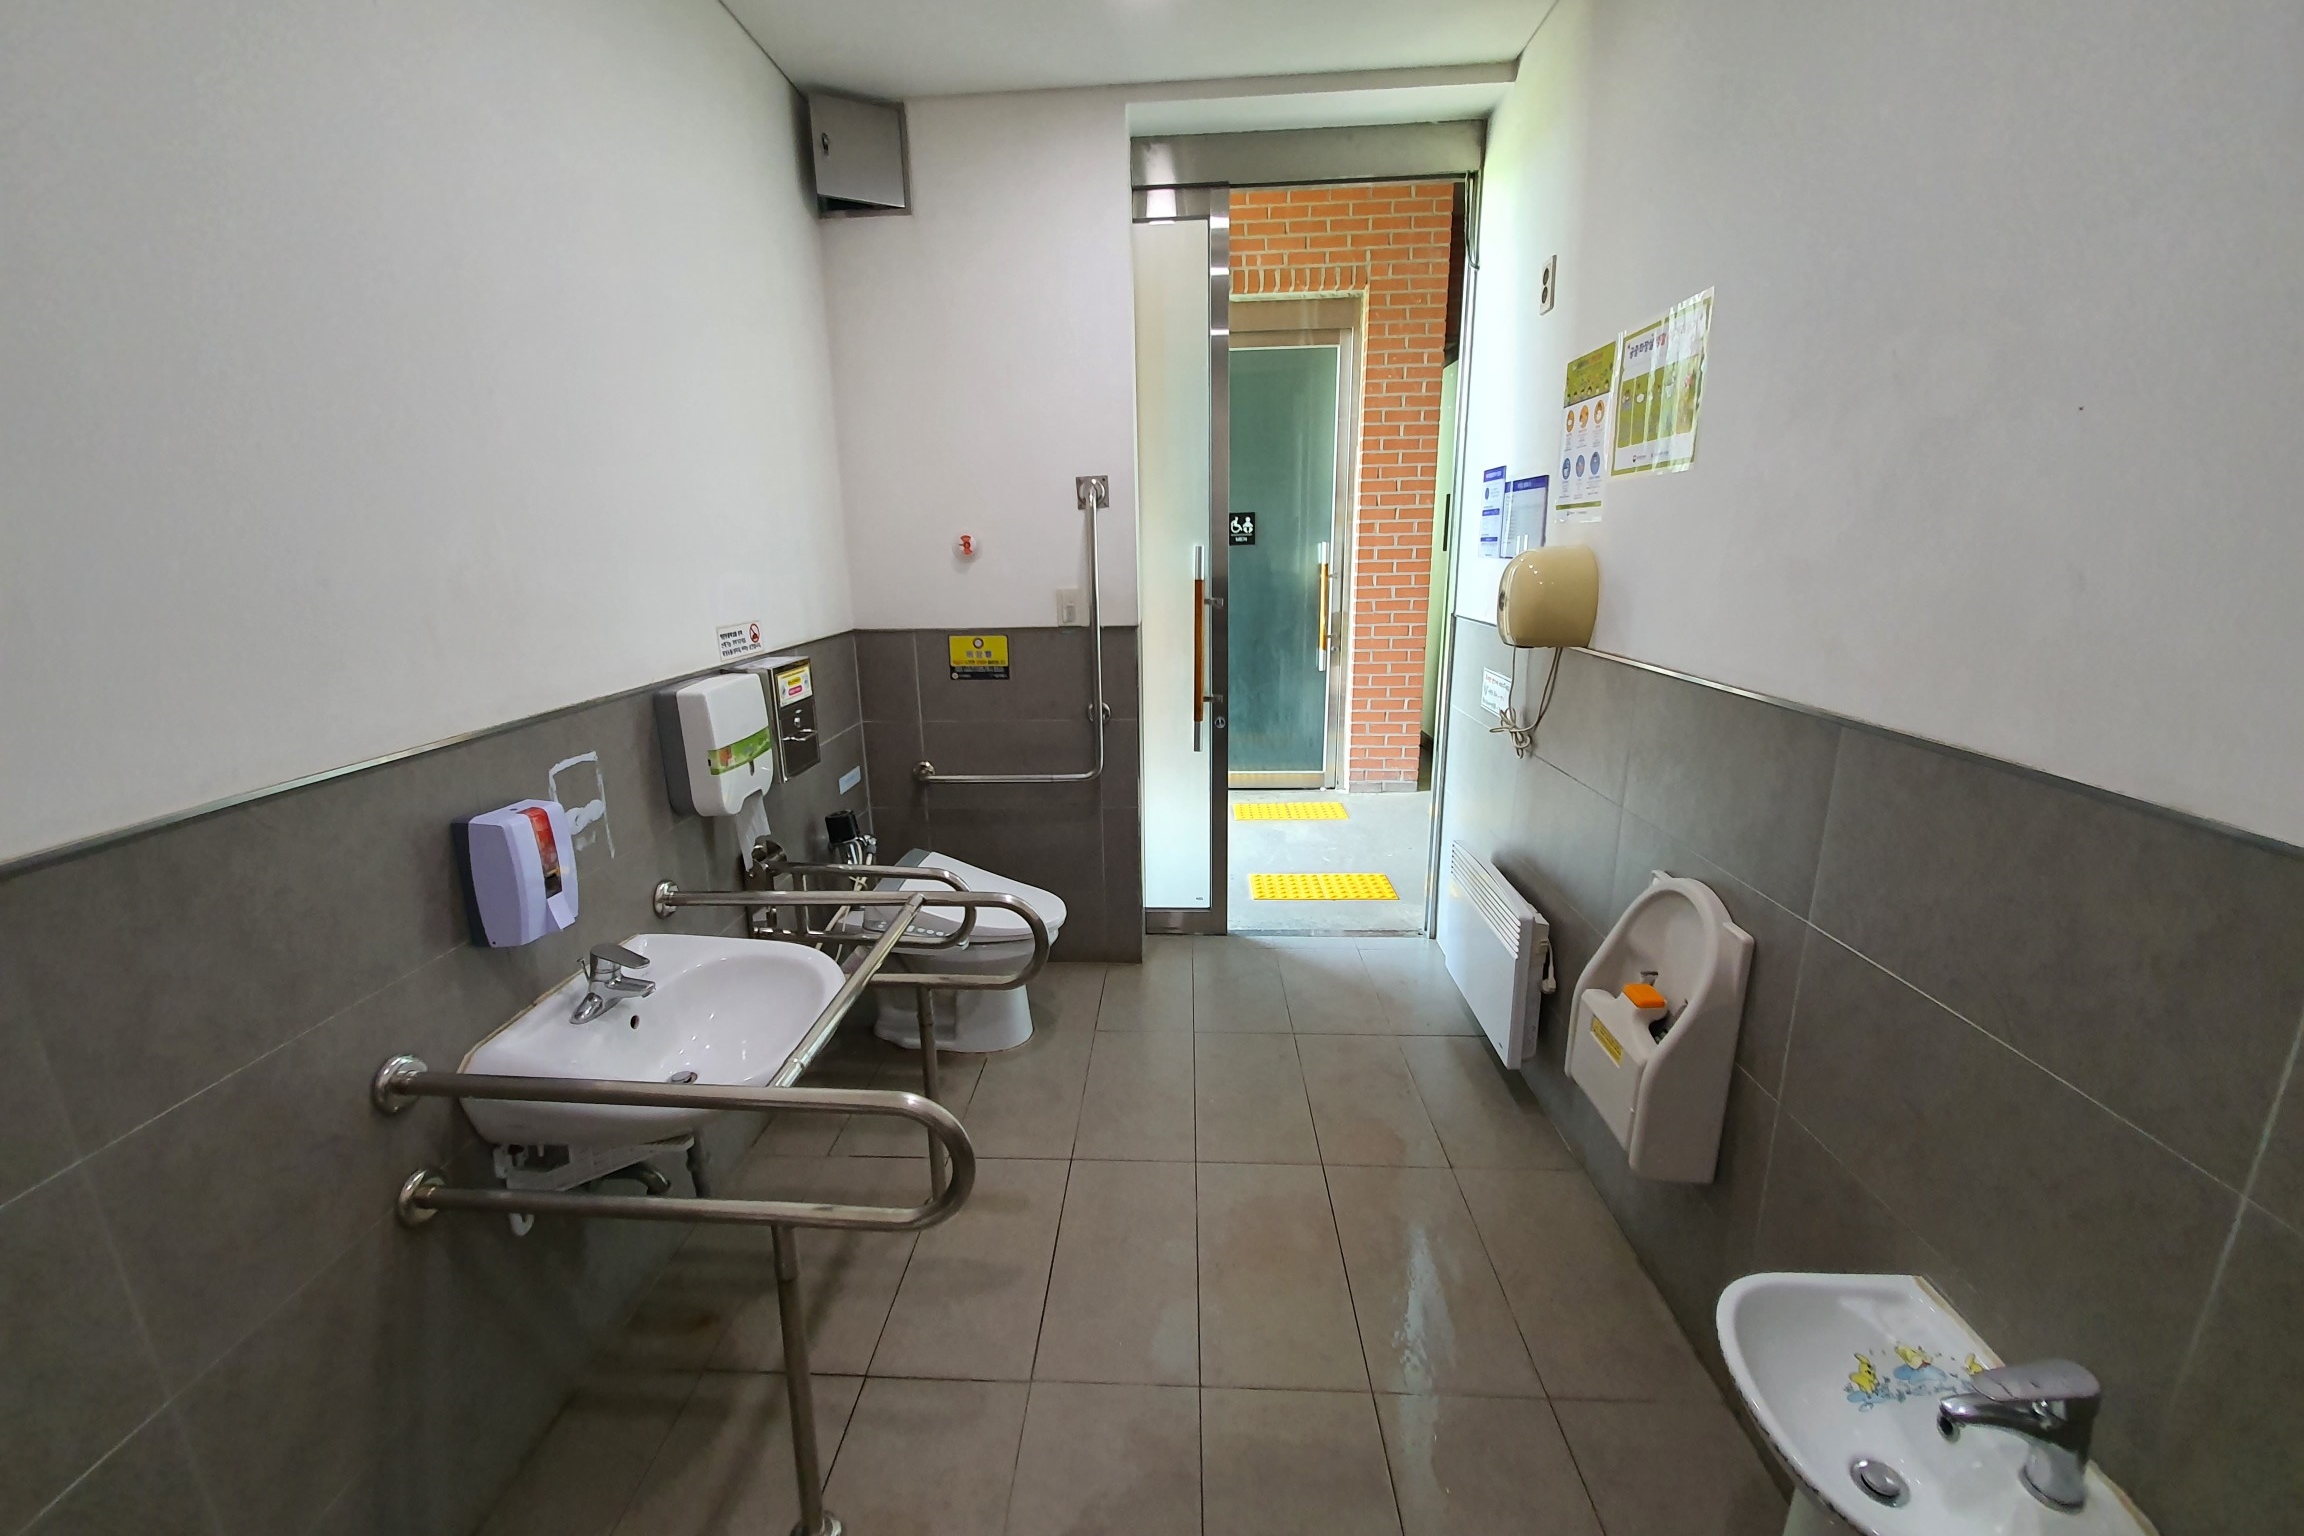 Restroom0 : Spacious accessible restroom in Pureun Arboretum
